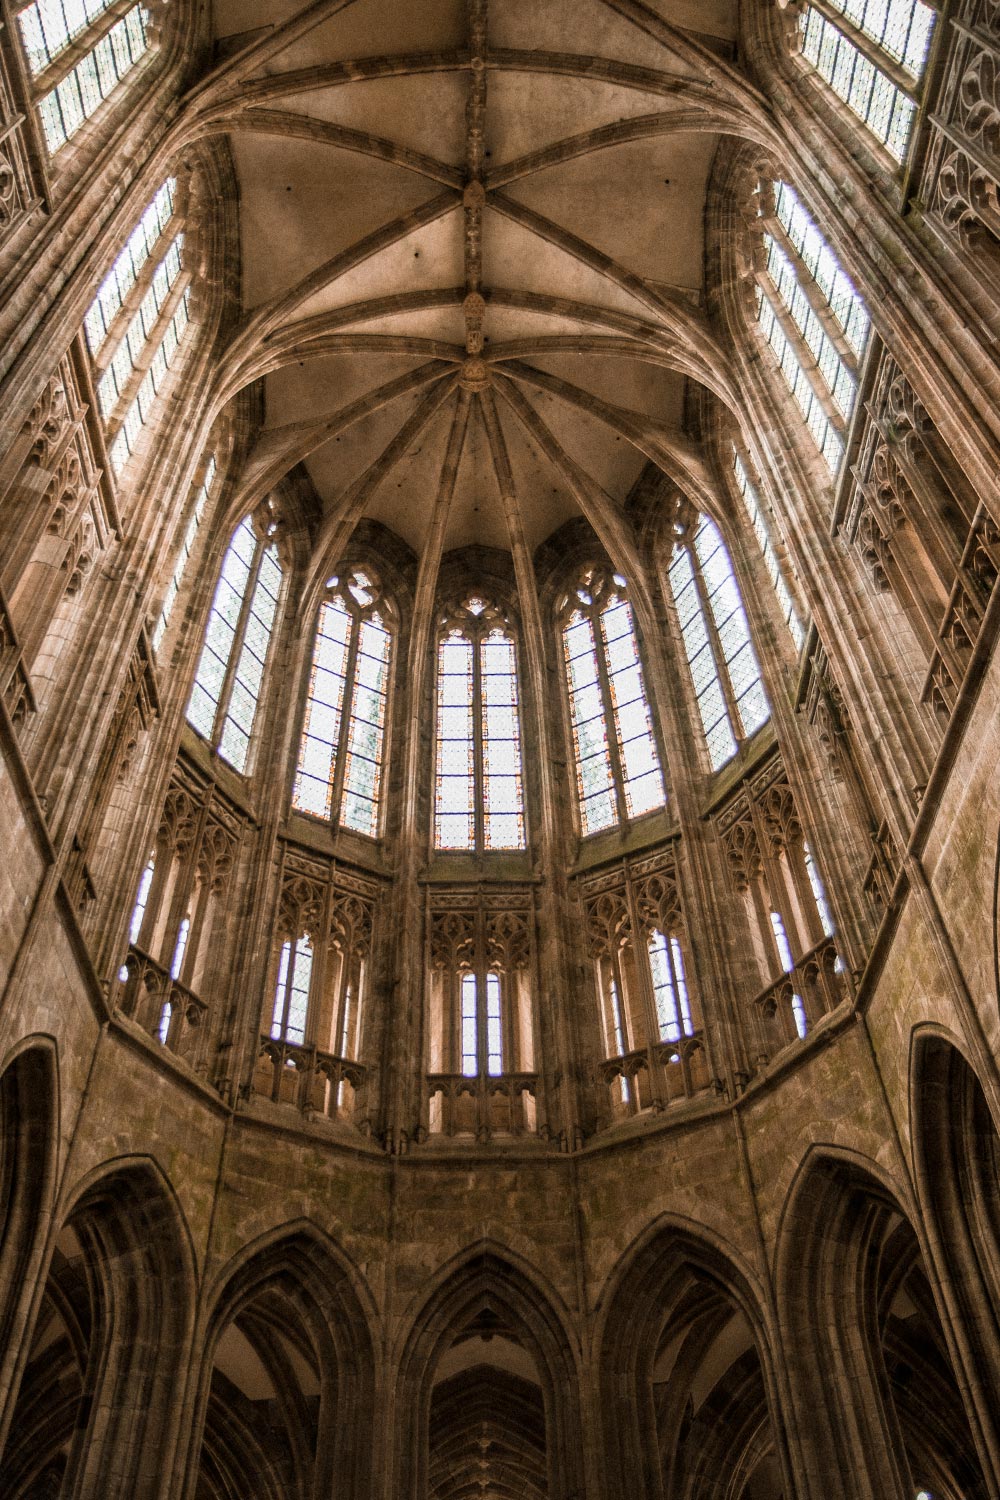 beautiful details inside the Abbey Mont-Saint-Michel